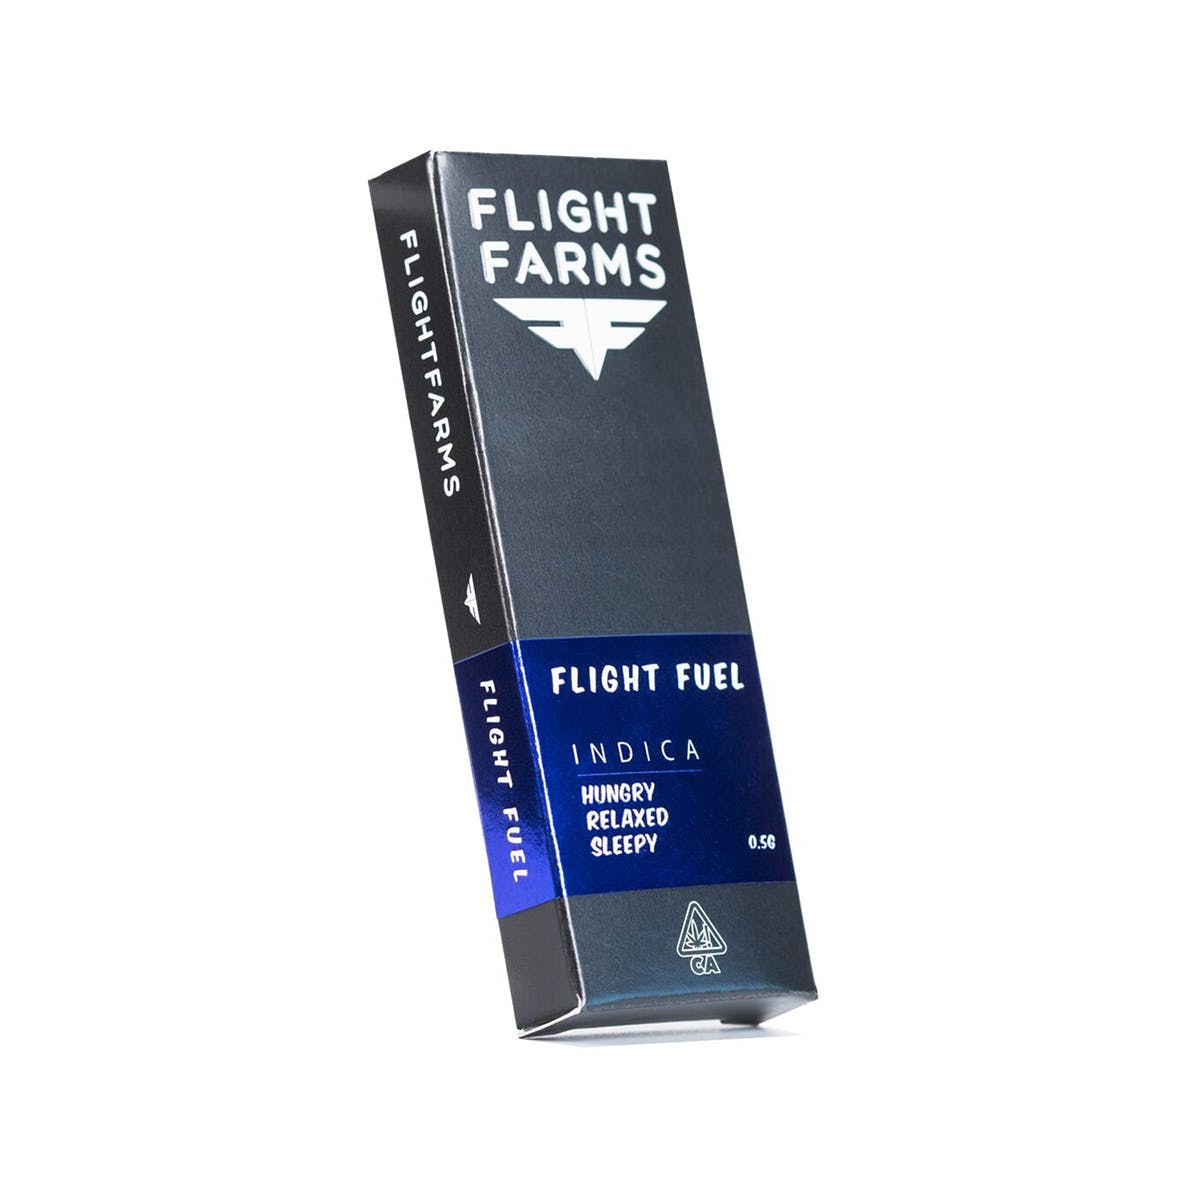 FLIGHT FARMS F6 Cartridge - Flight Fuel 500mg